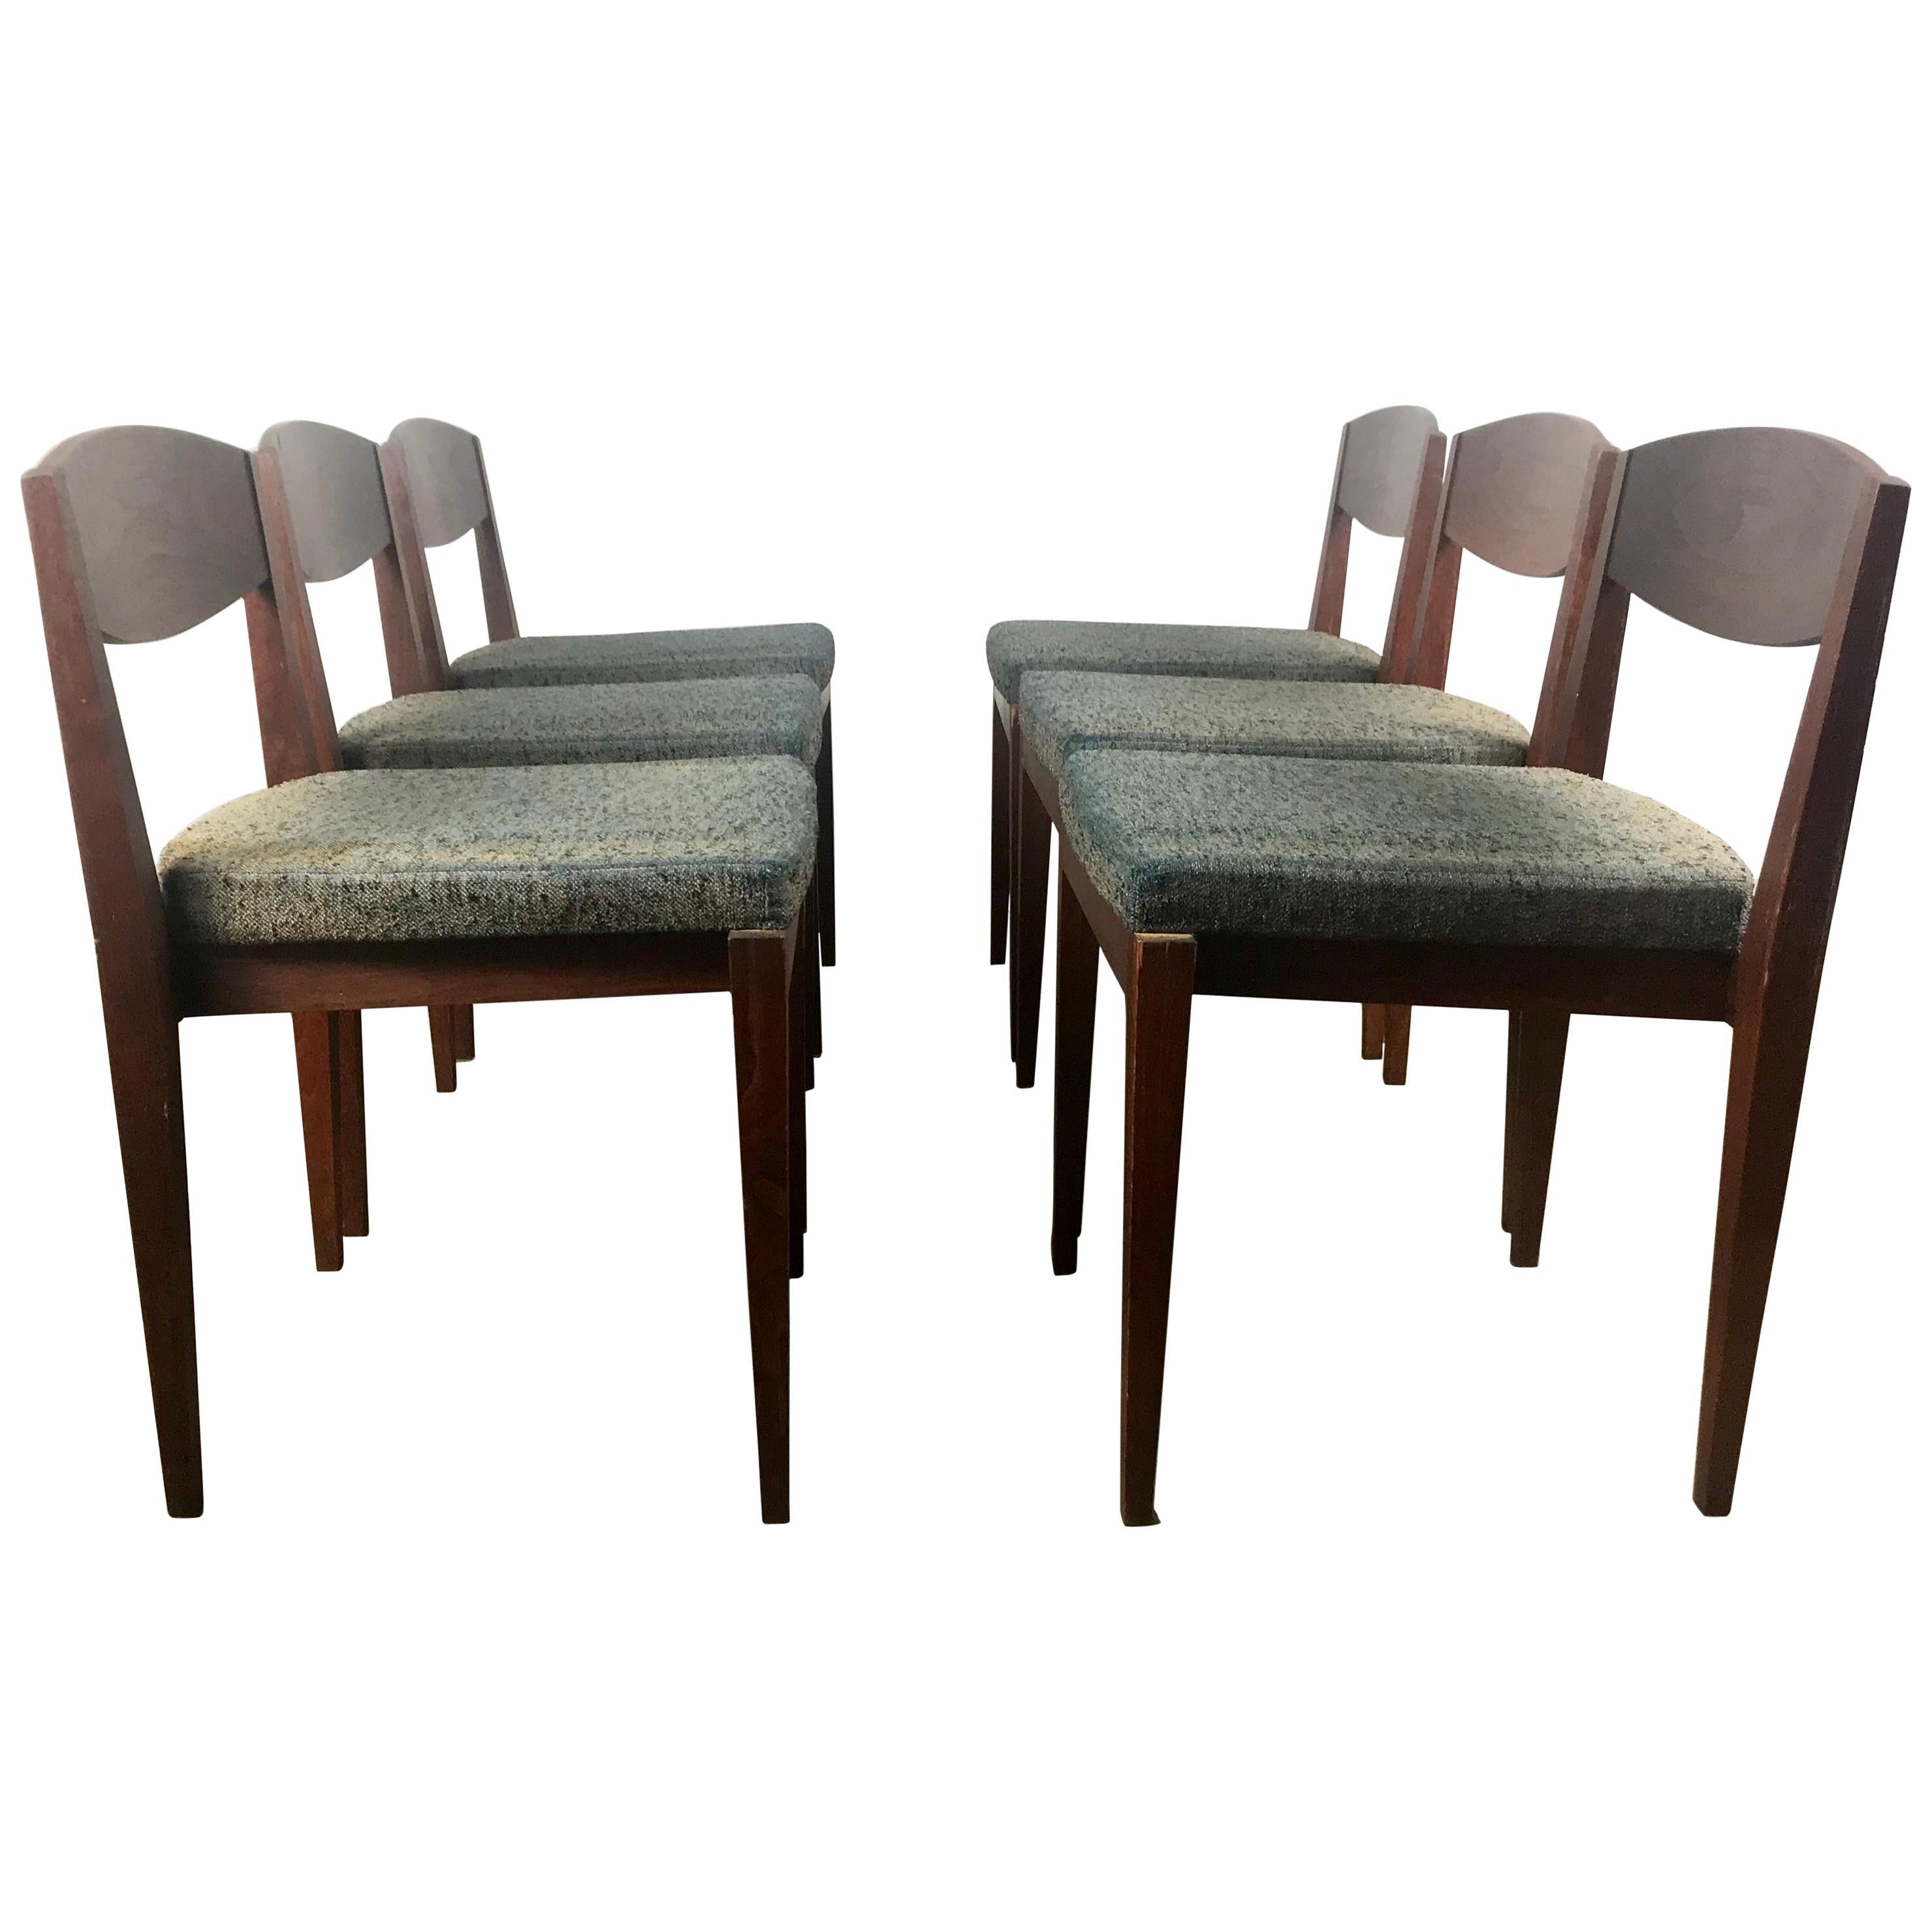 Ensemble inhabituel de 6 chaises de salle à manger modernistes américaines, design architectural